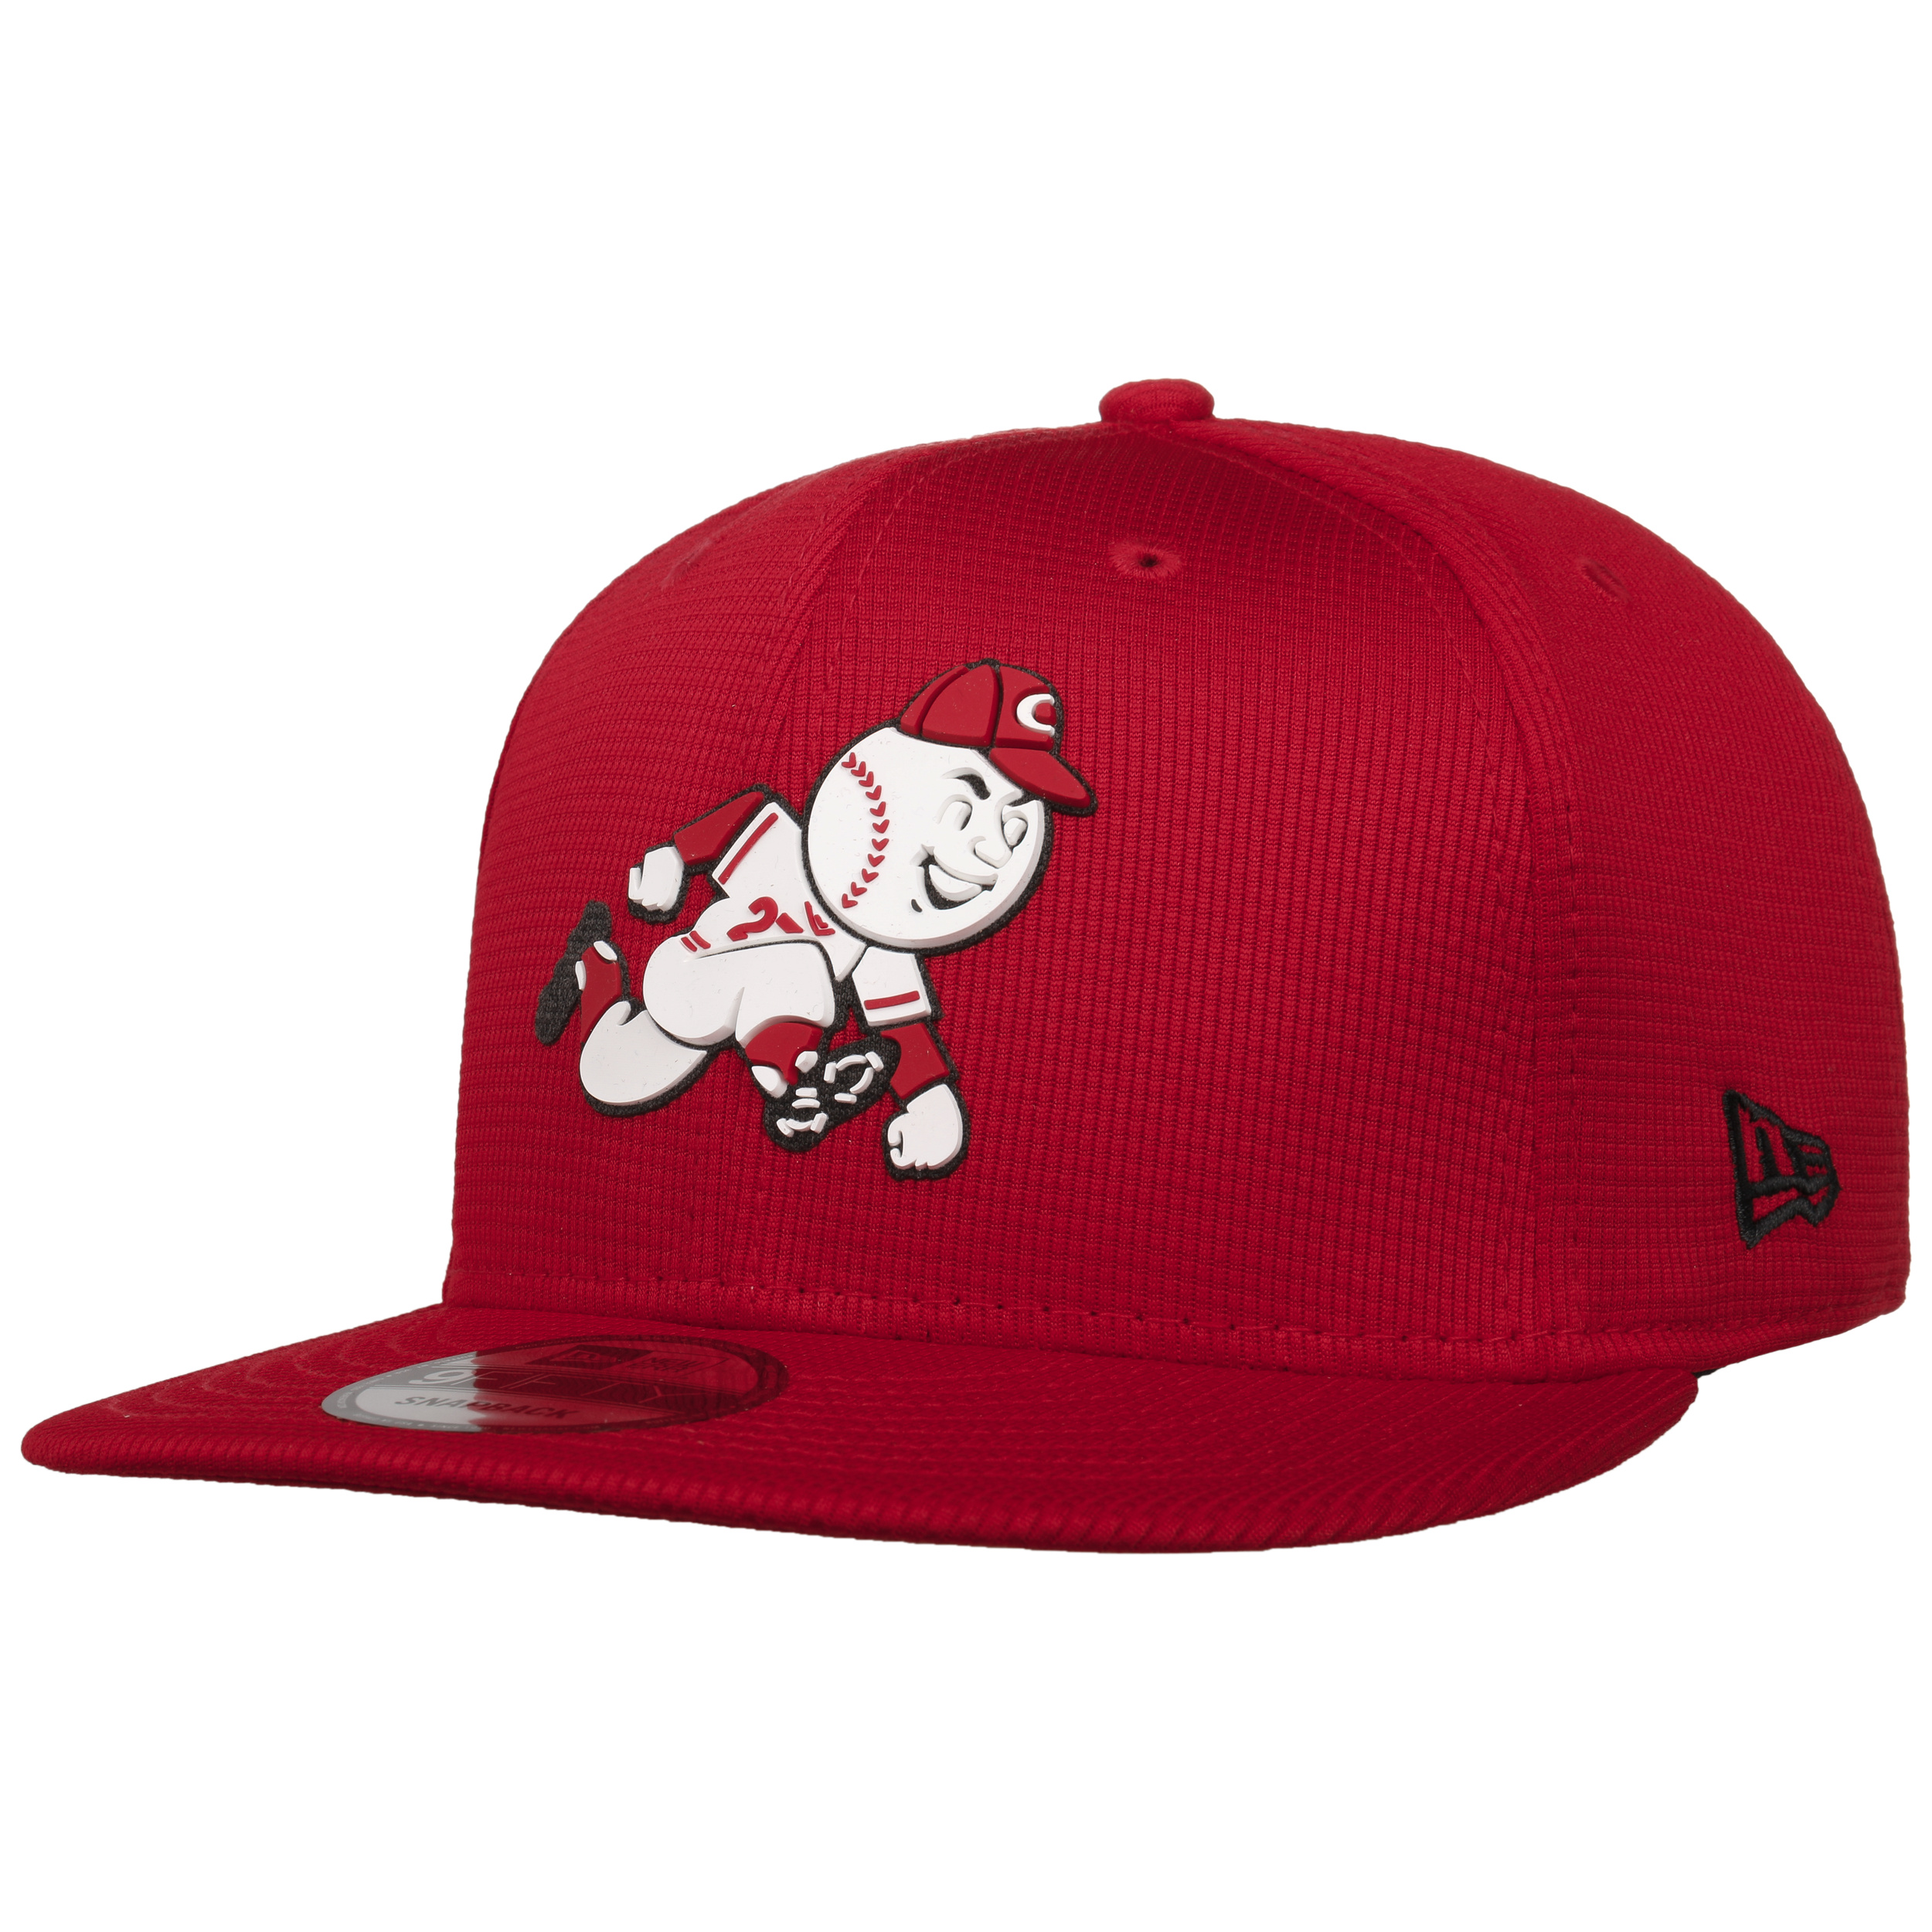 Official Cincinnati Reds Hats, Reds Cap, Reds Hats, Beanies